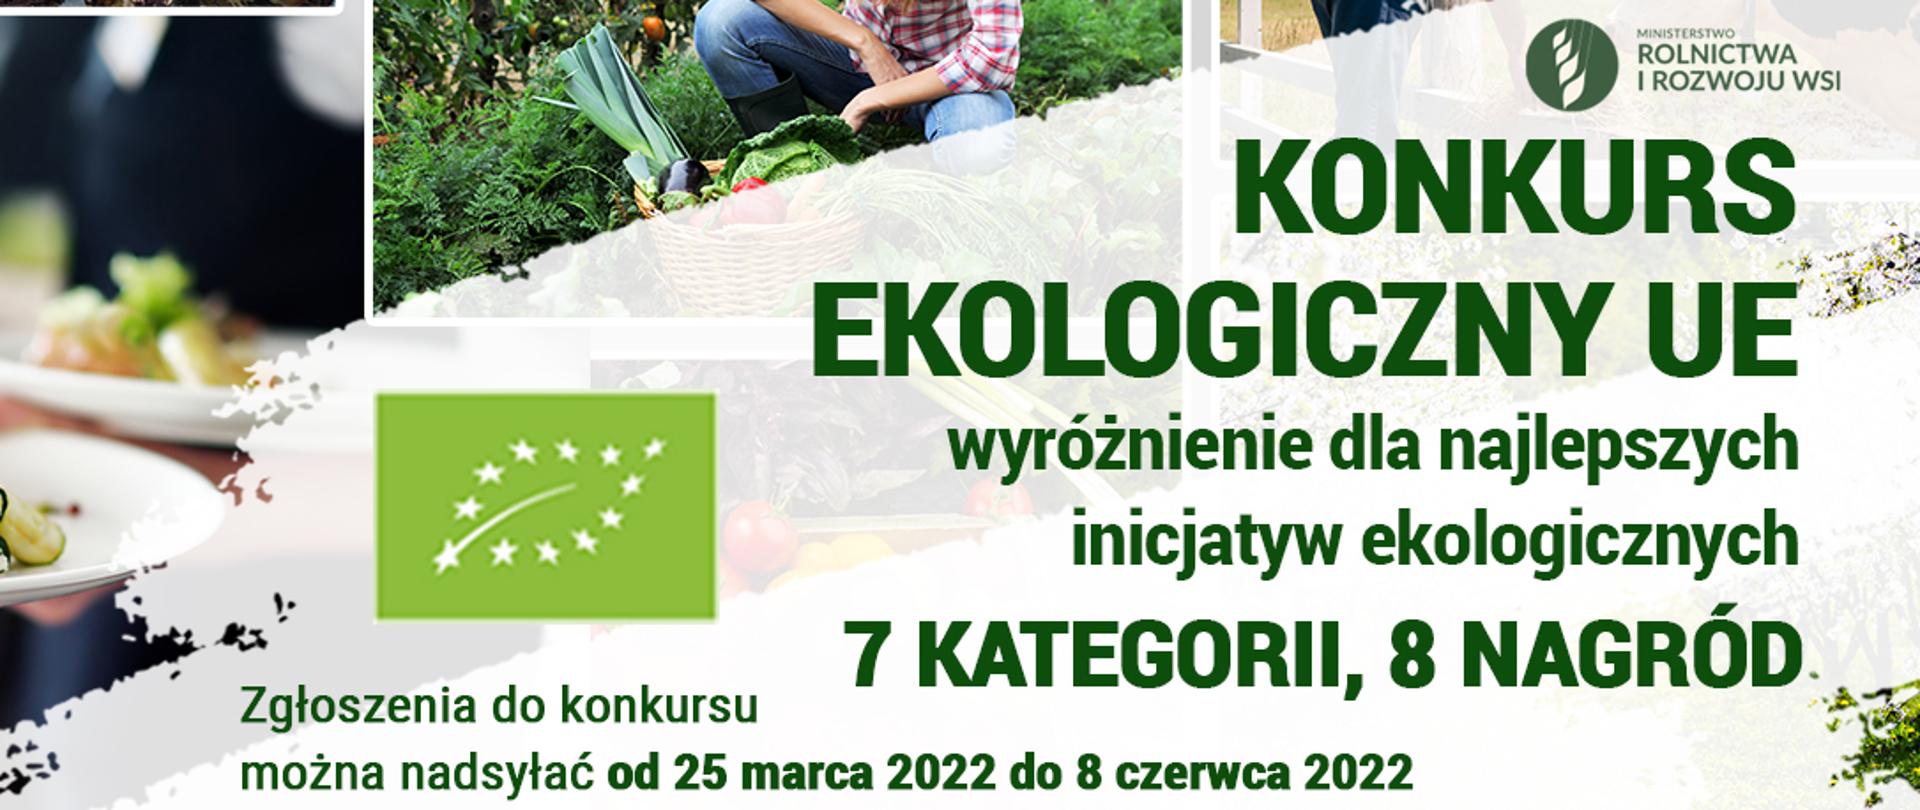 Plakat dotyczący zgłoszeń do konkursu ekologicznego UE